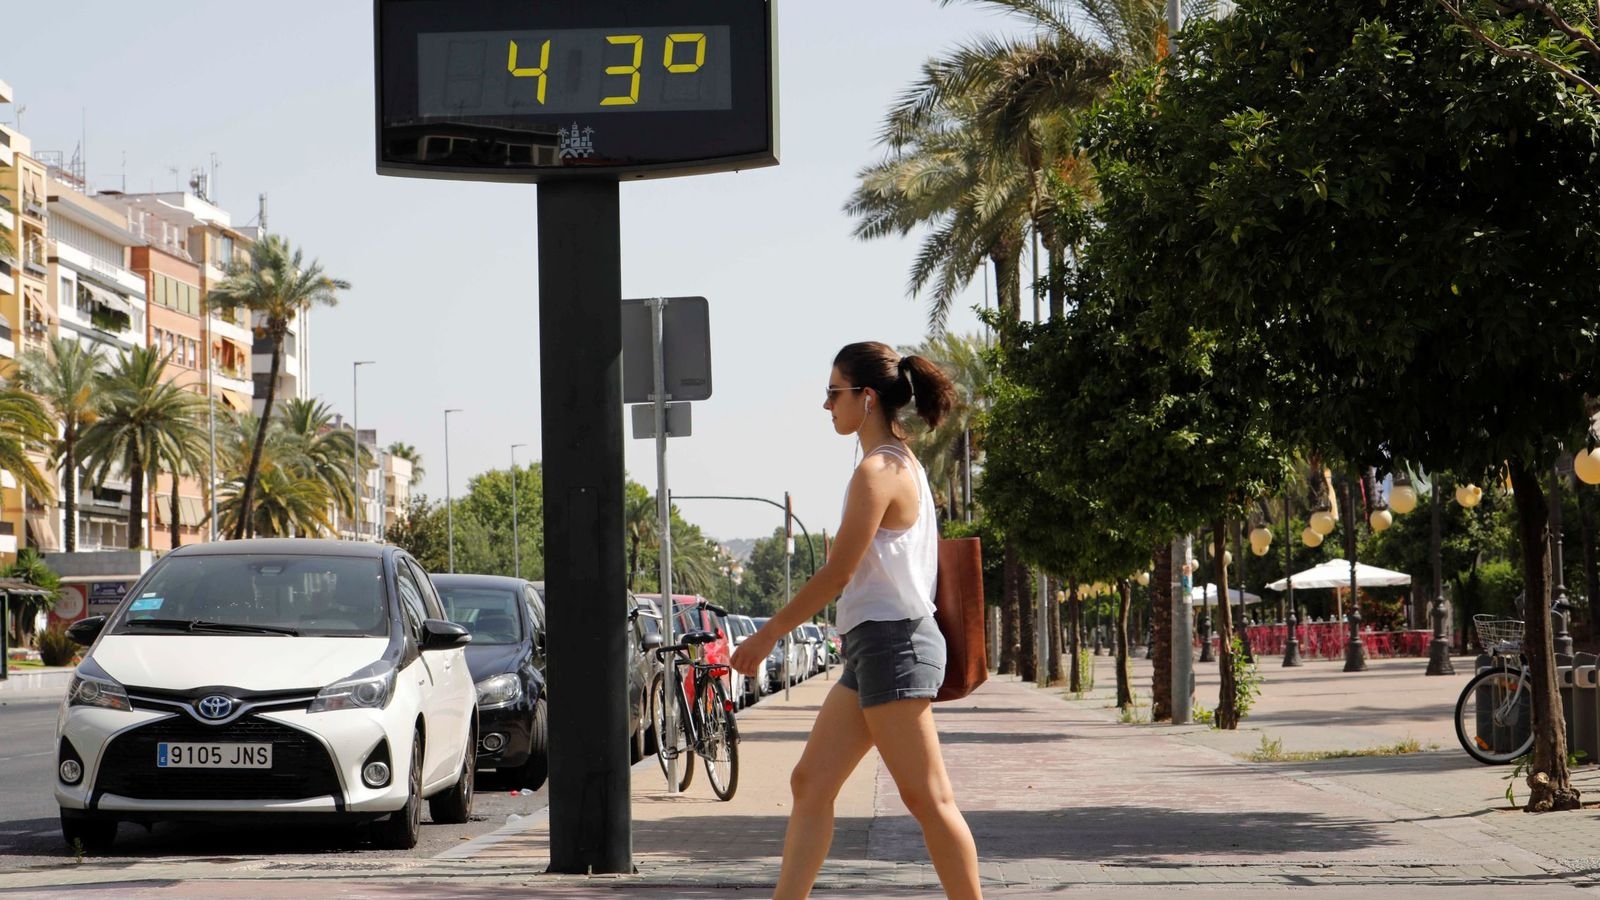 Las temperaturas en partes de España se elevaron entre los 40 y 45 grados centígrados, reveló el Ministerio de Sanidad